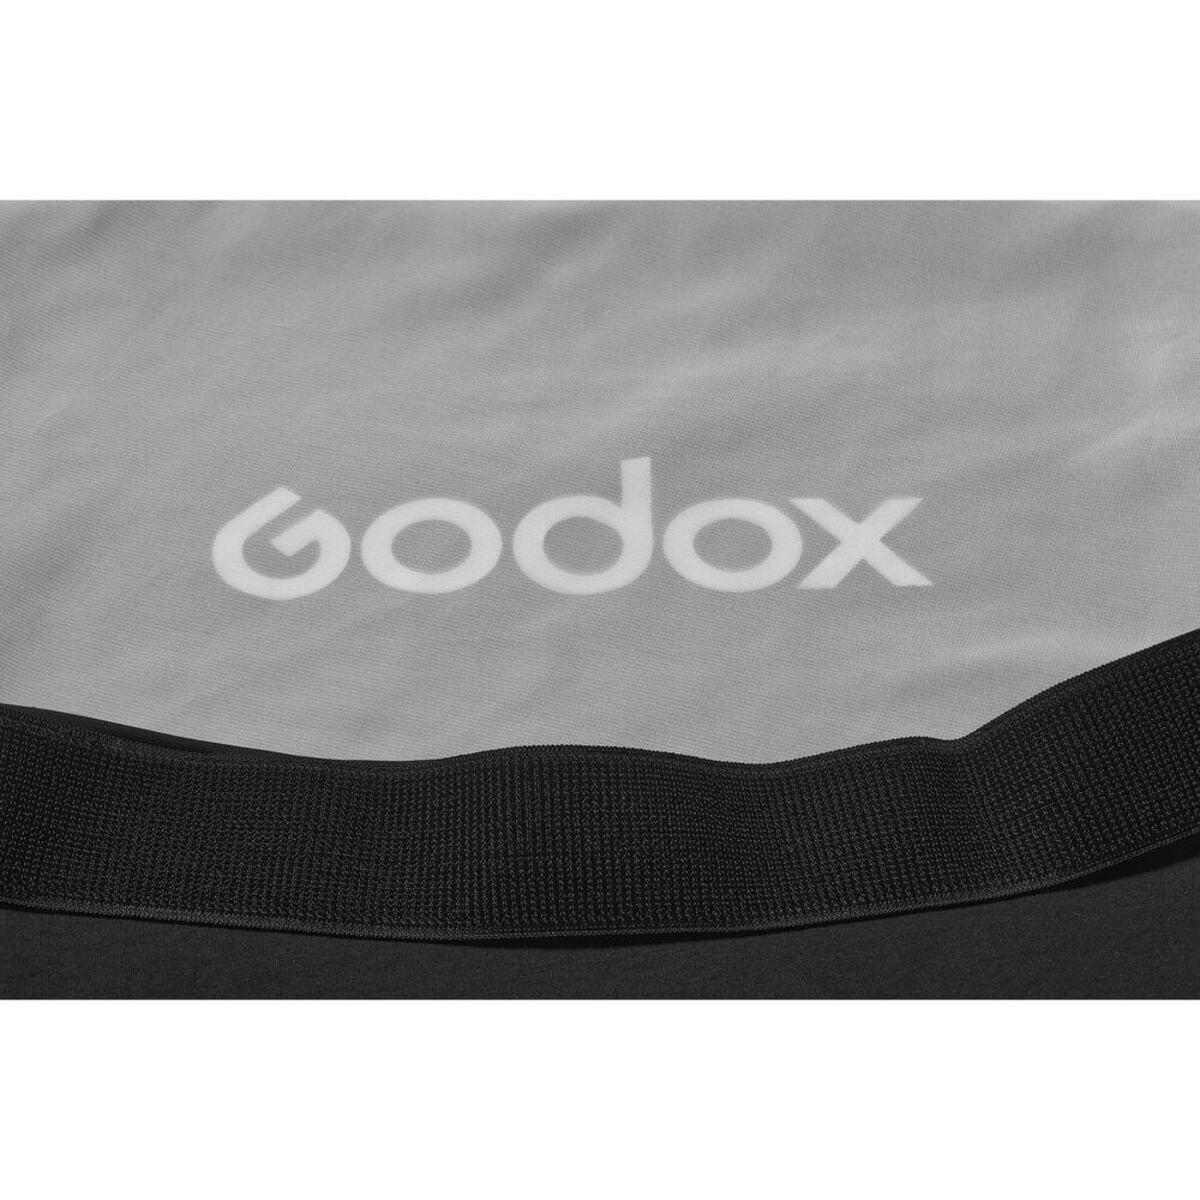 Godox Diffusor 2 for Parabolic 88